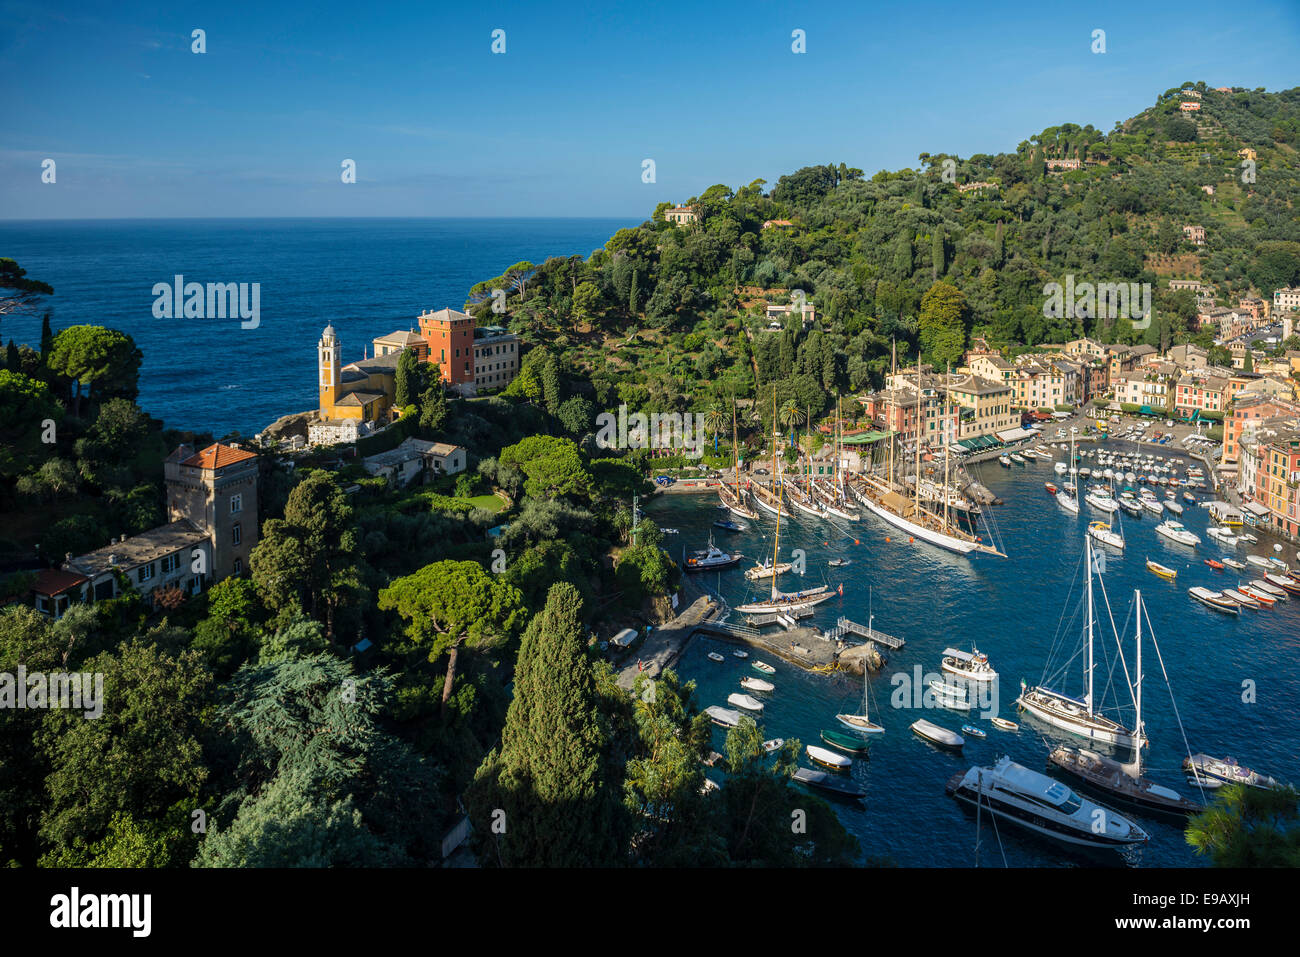 Village sur la côte, Portofino, Province de Gênes, ligurie, italie Banque D'Images